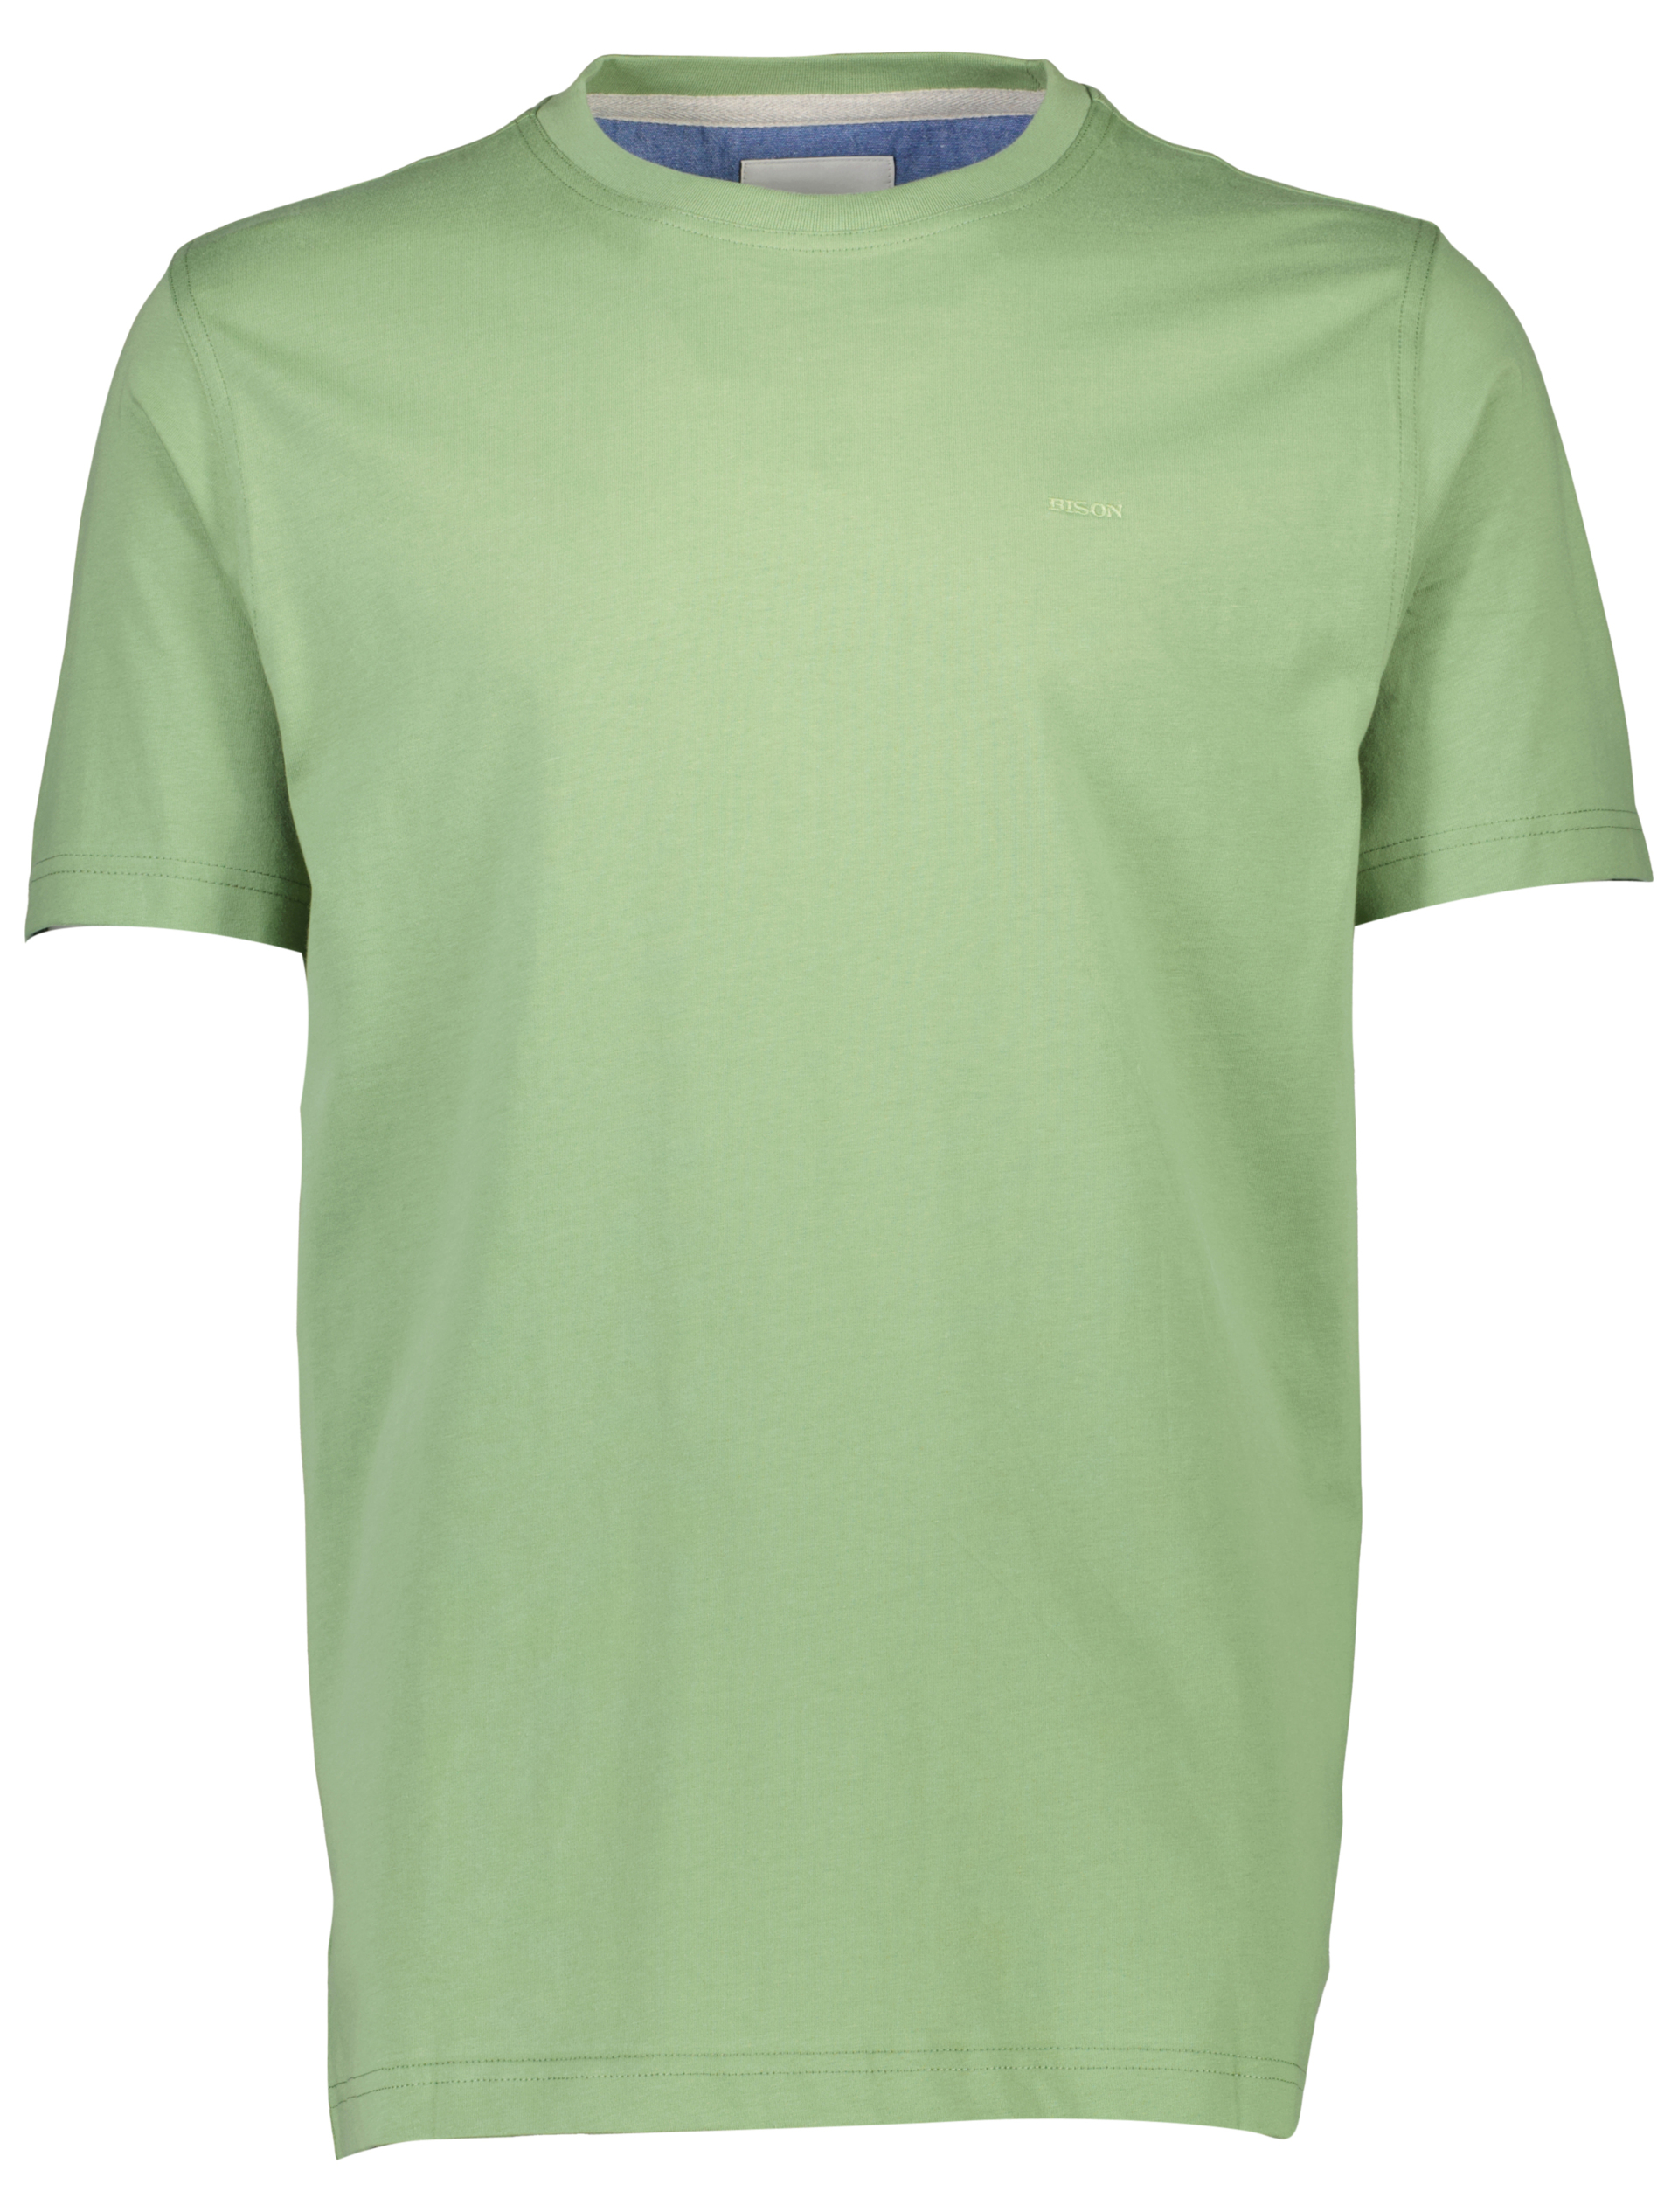 Bison T-shirt grön / lt green 224